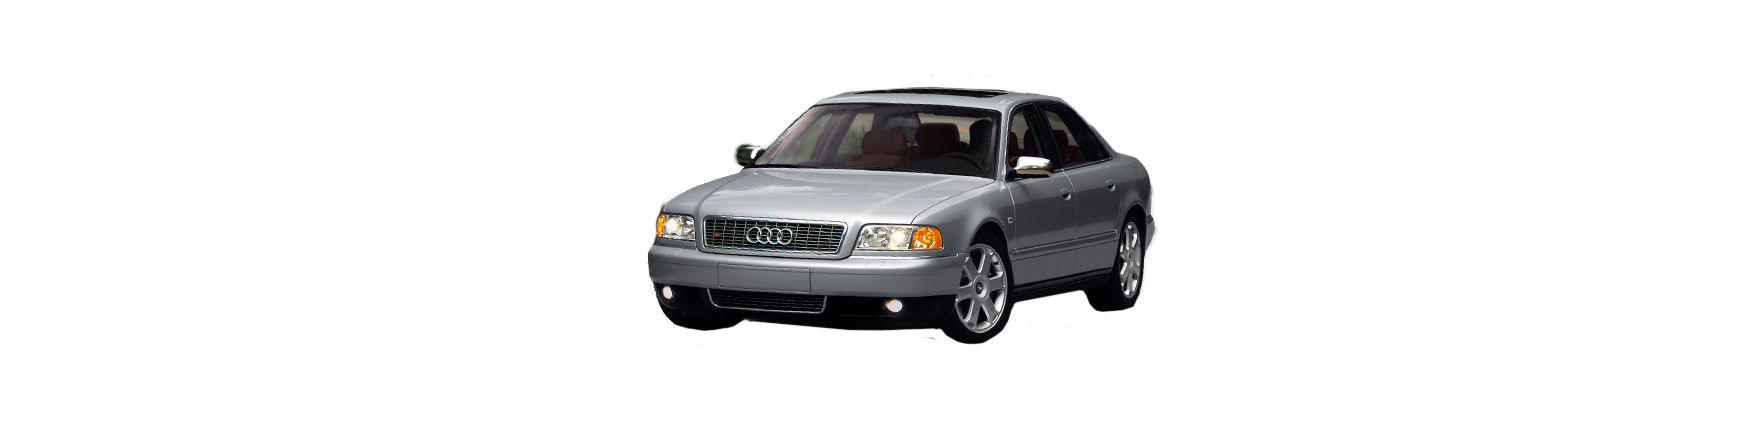 Audi A8 1994 a 2003  Repuestos de calidad al mejor precio.